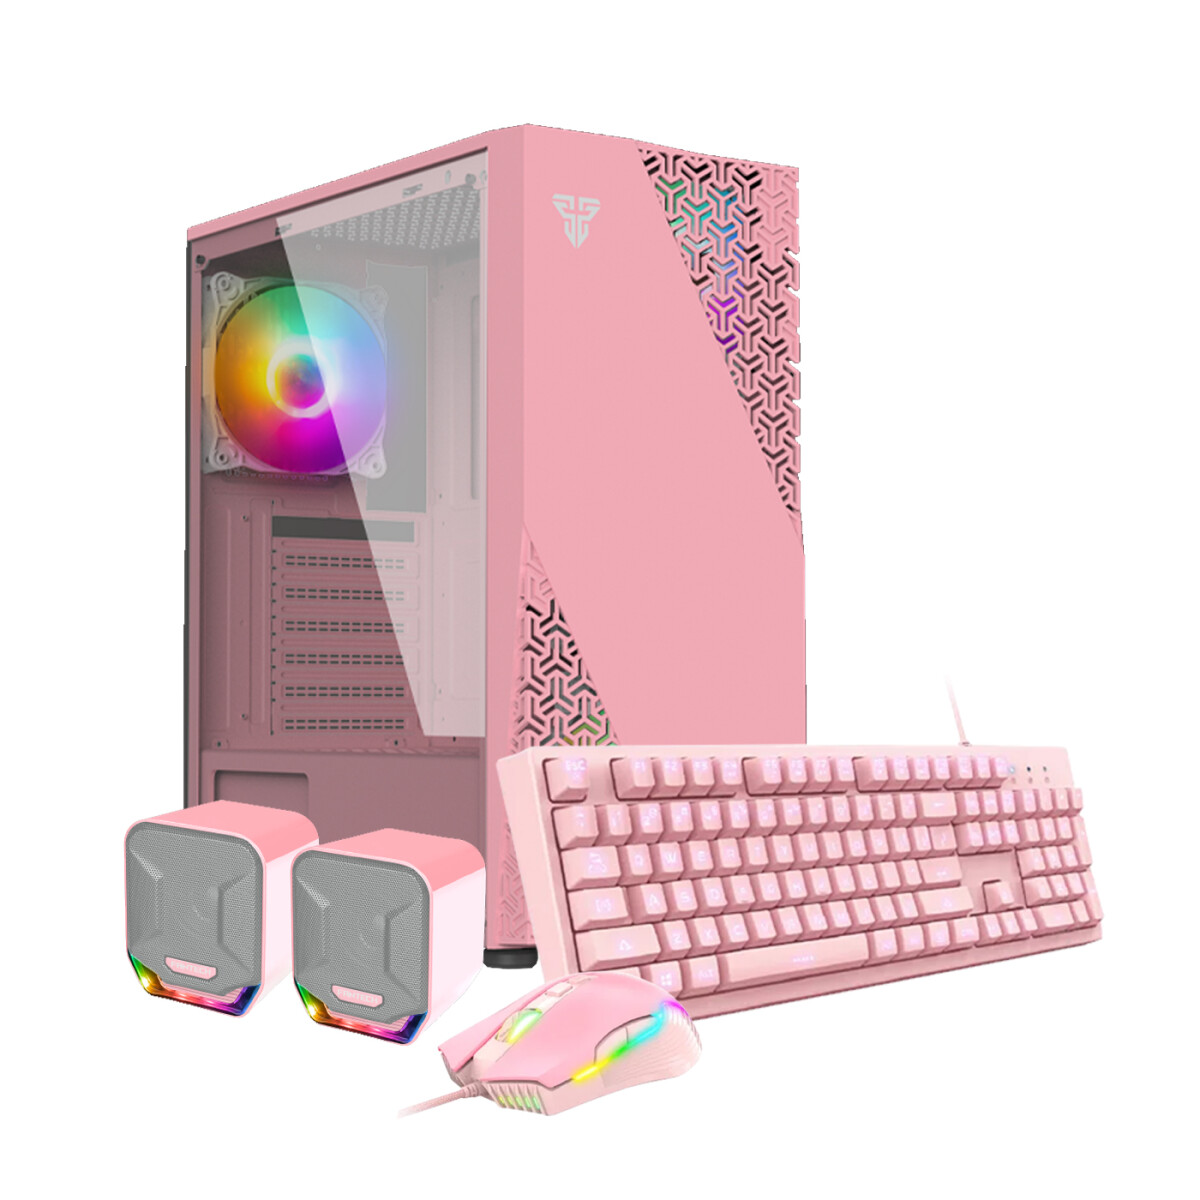 PC GAMER Pink Full. Micro Intel i5-10ªGEN. RAM 16GB DDR4. Disco Sólido 128GB+D.Duro 500GB. Tarjeta Ati Radeon RX550 GTX4GB DDR5 